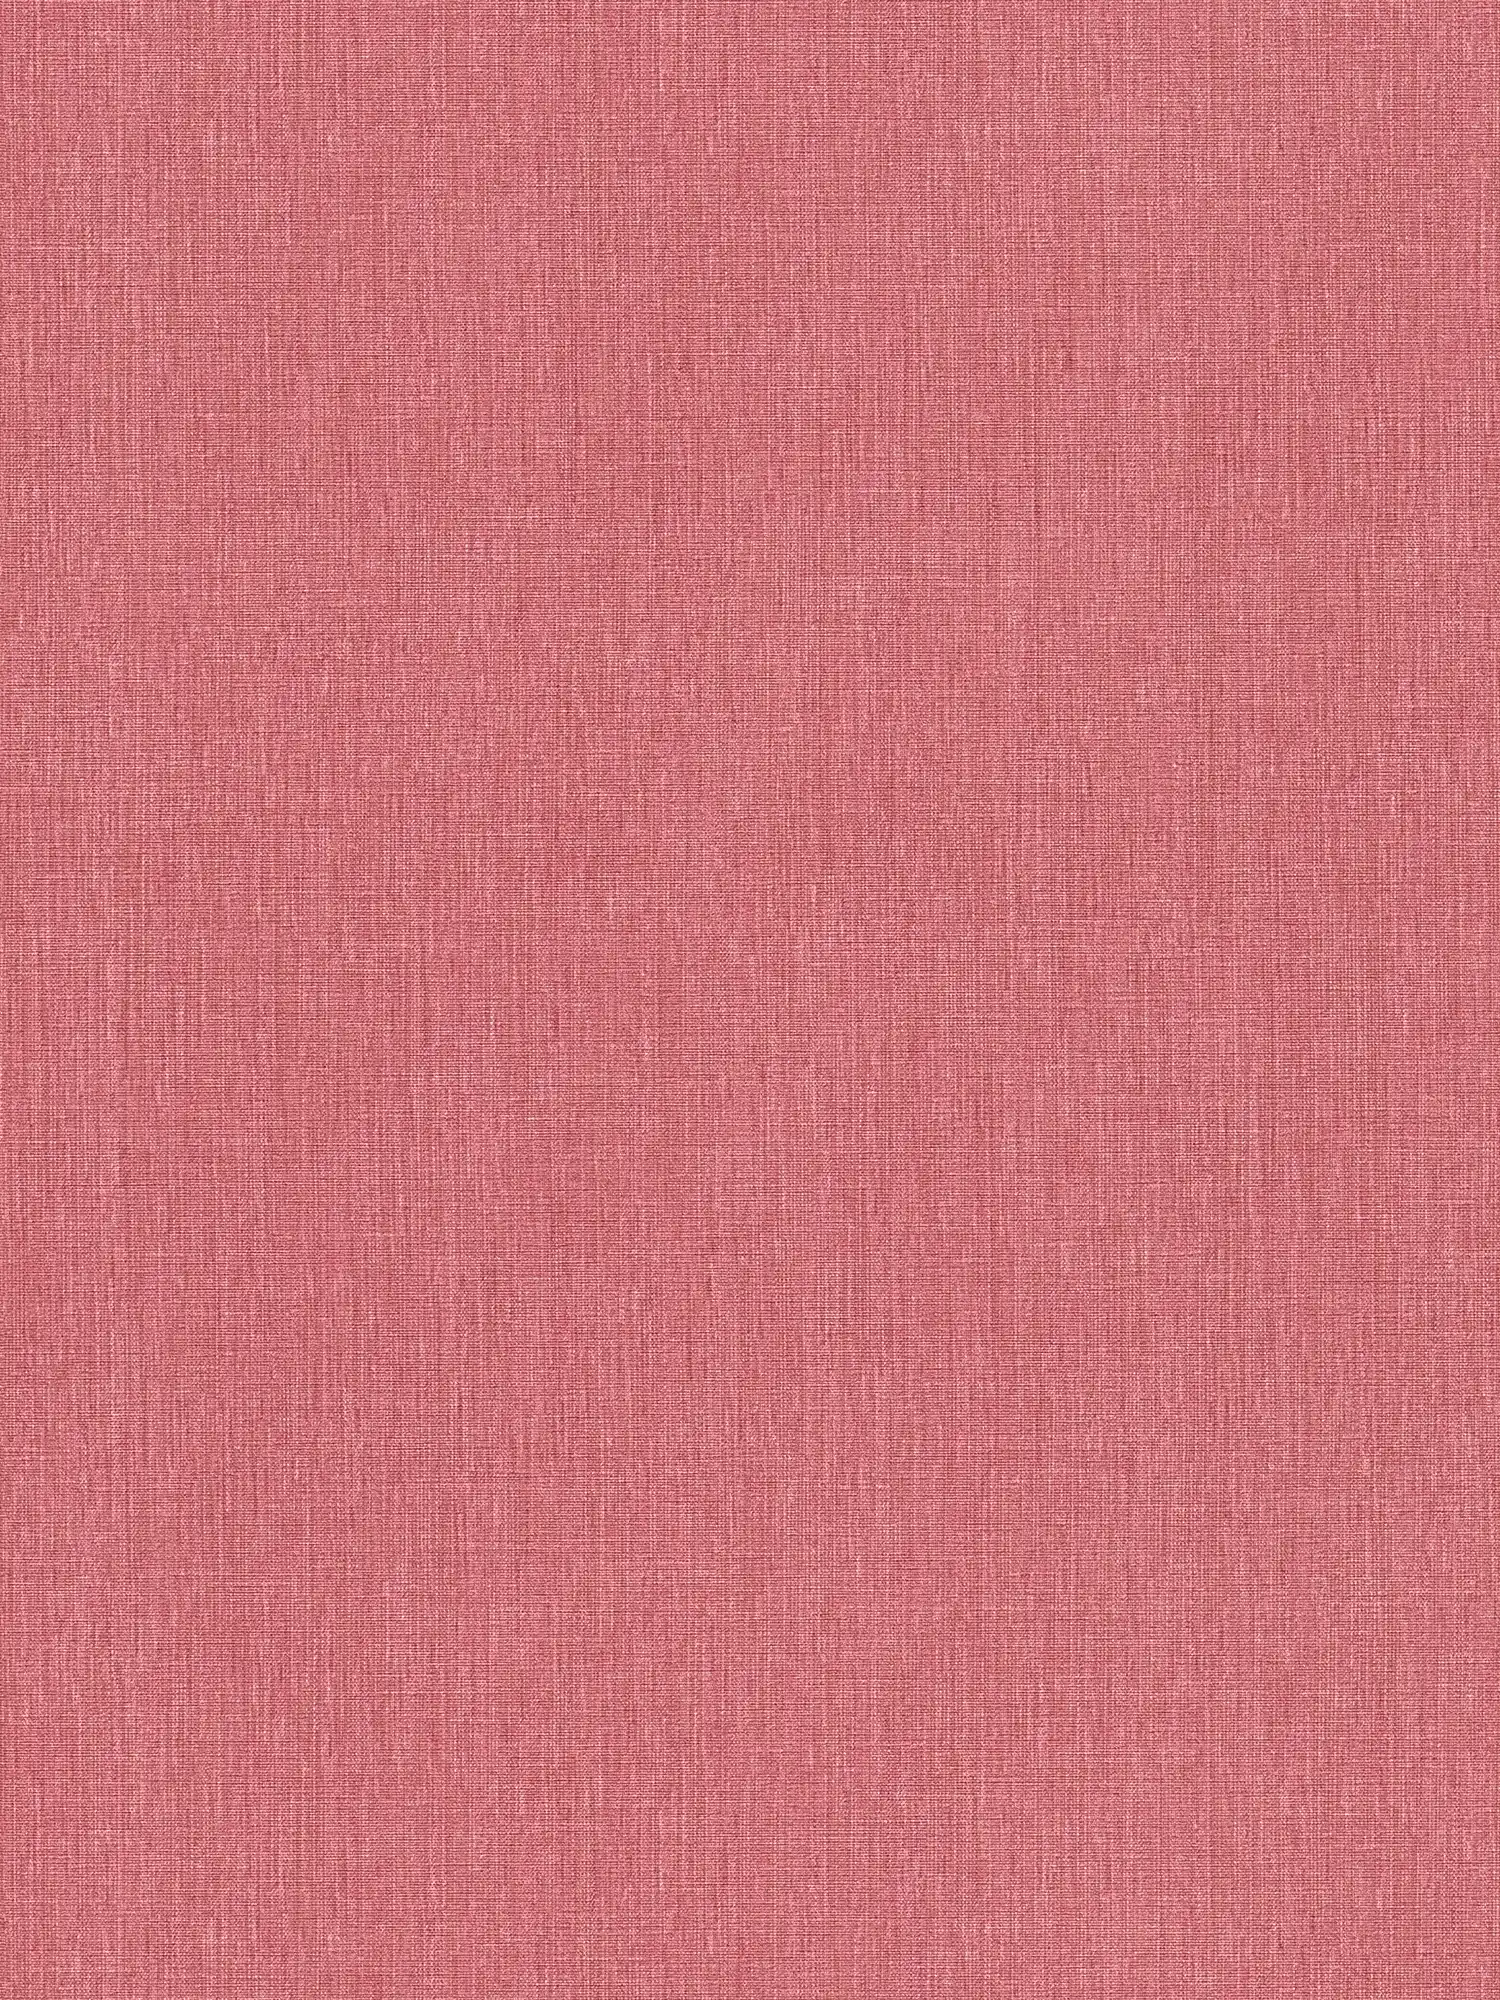 Papel pintado no tejido de un color con aspecto textil en acabado mate - rojo
